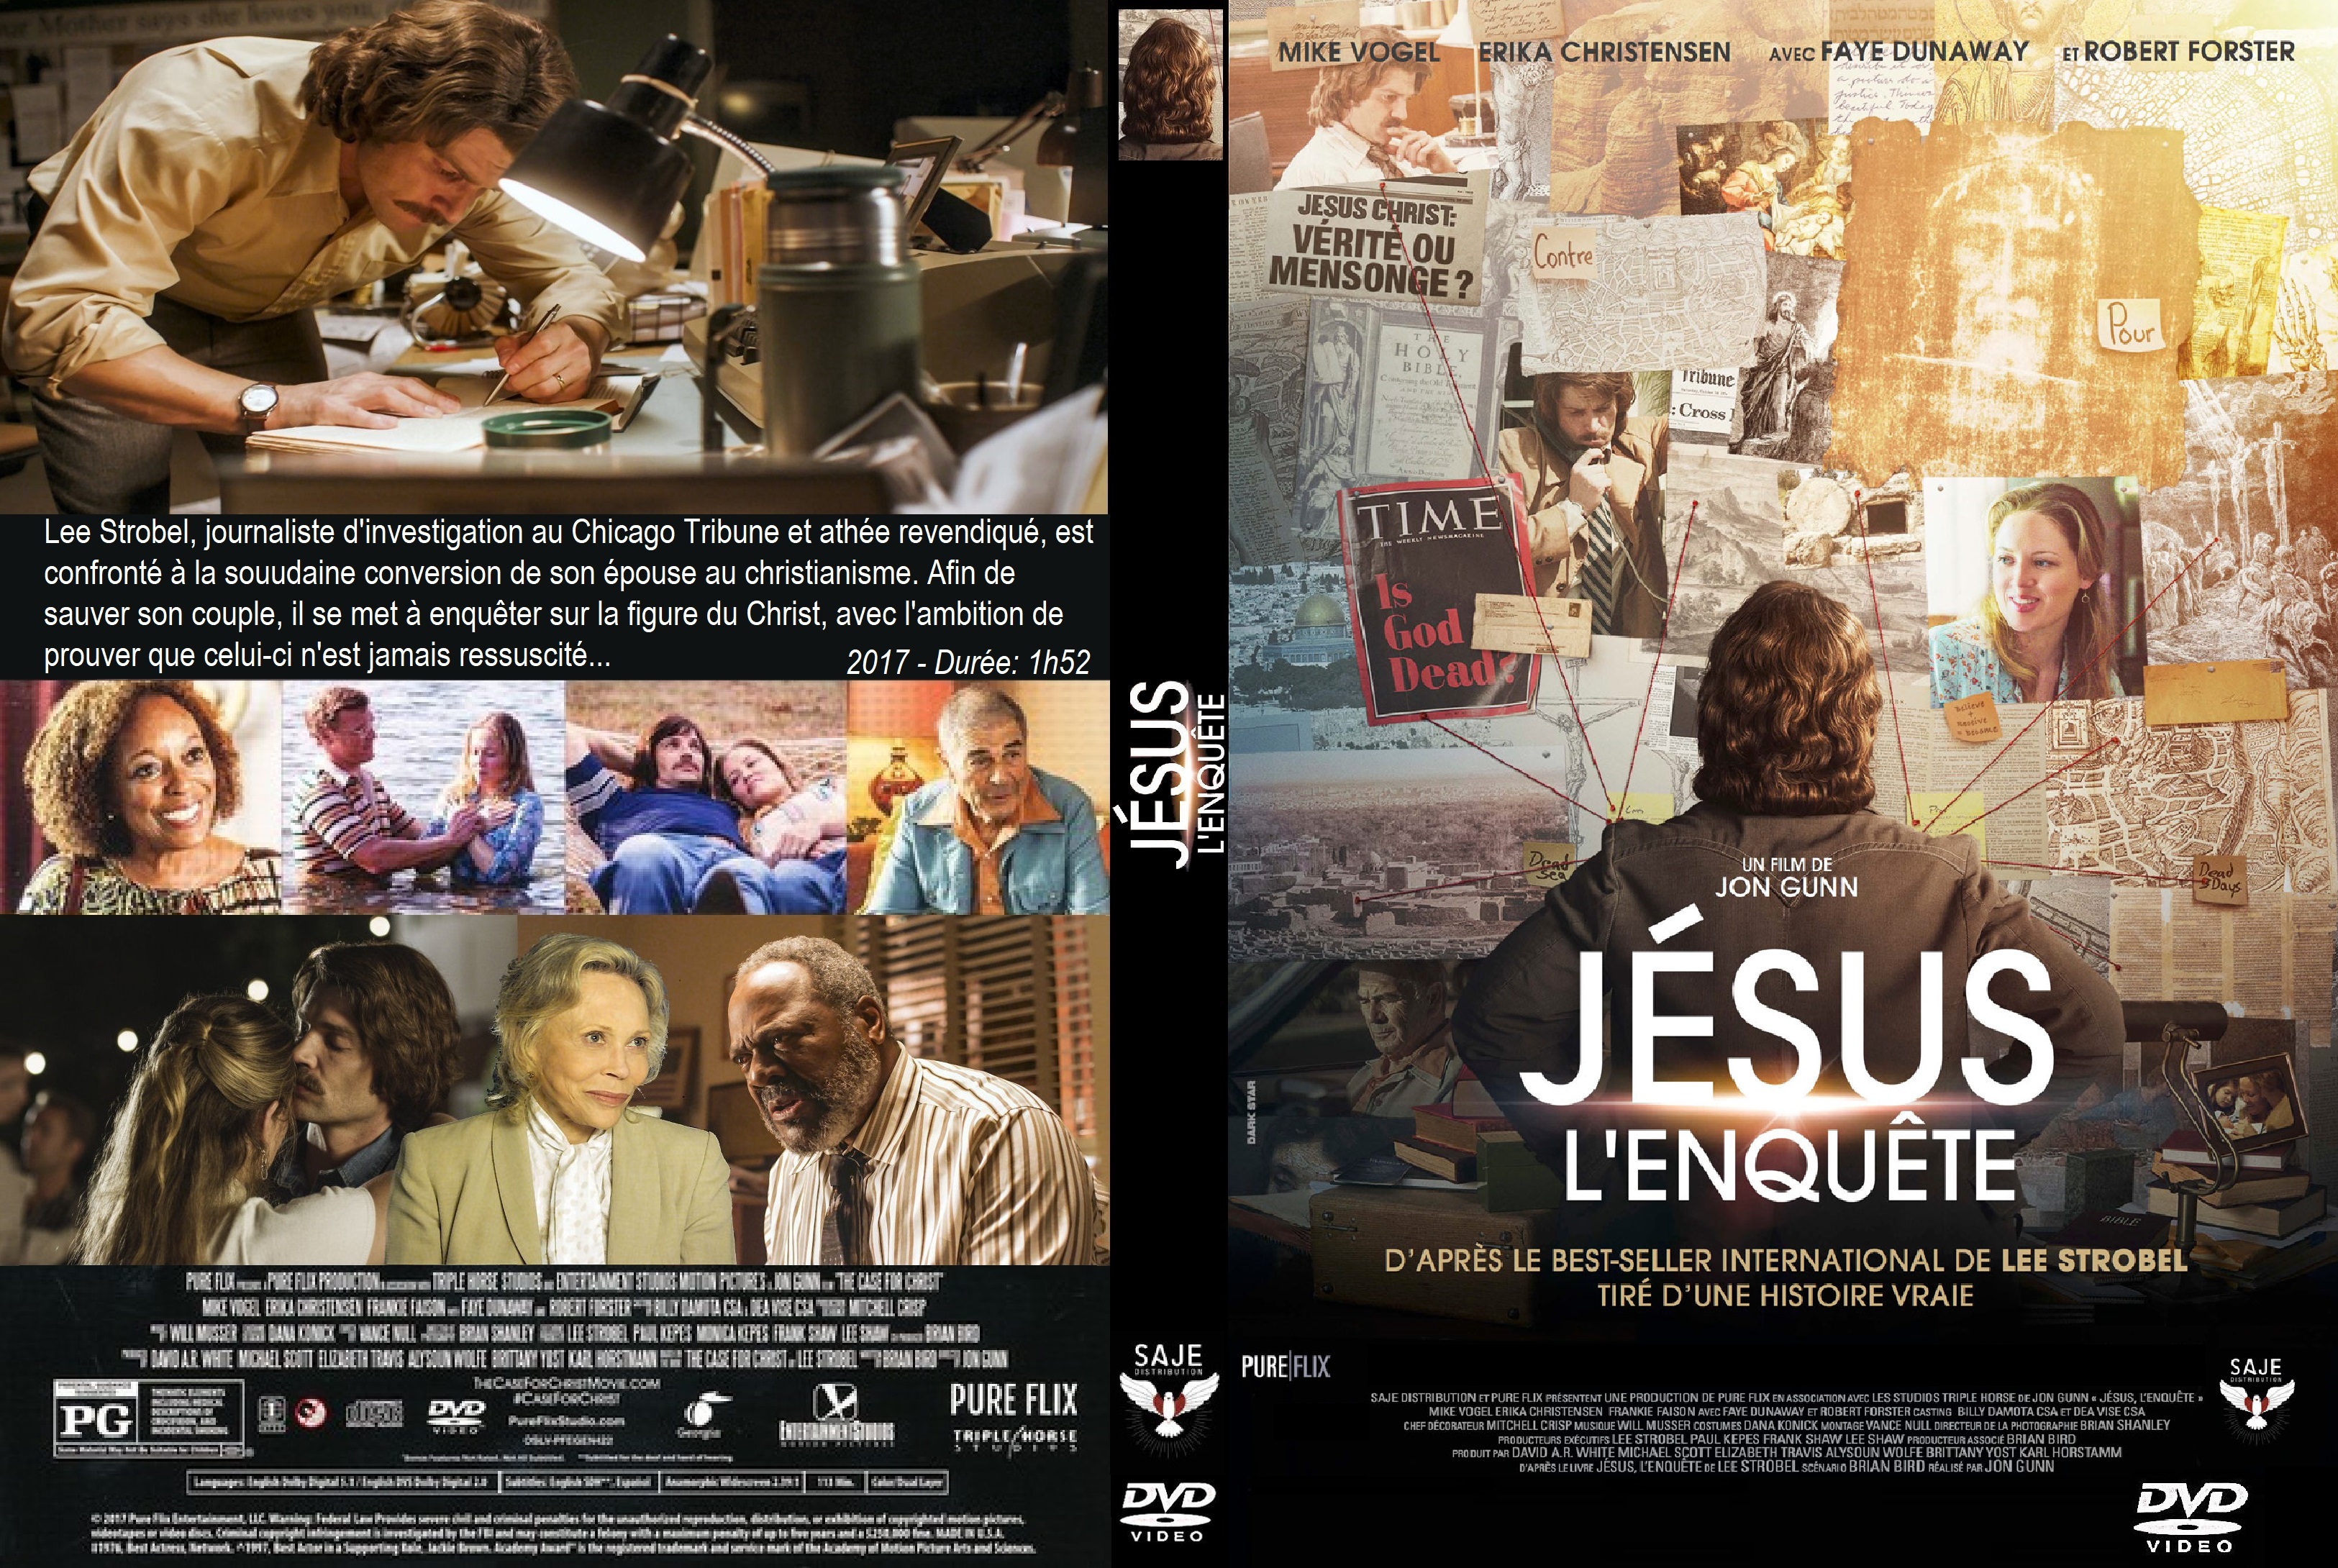 Jaquette DVD Jesus l